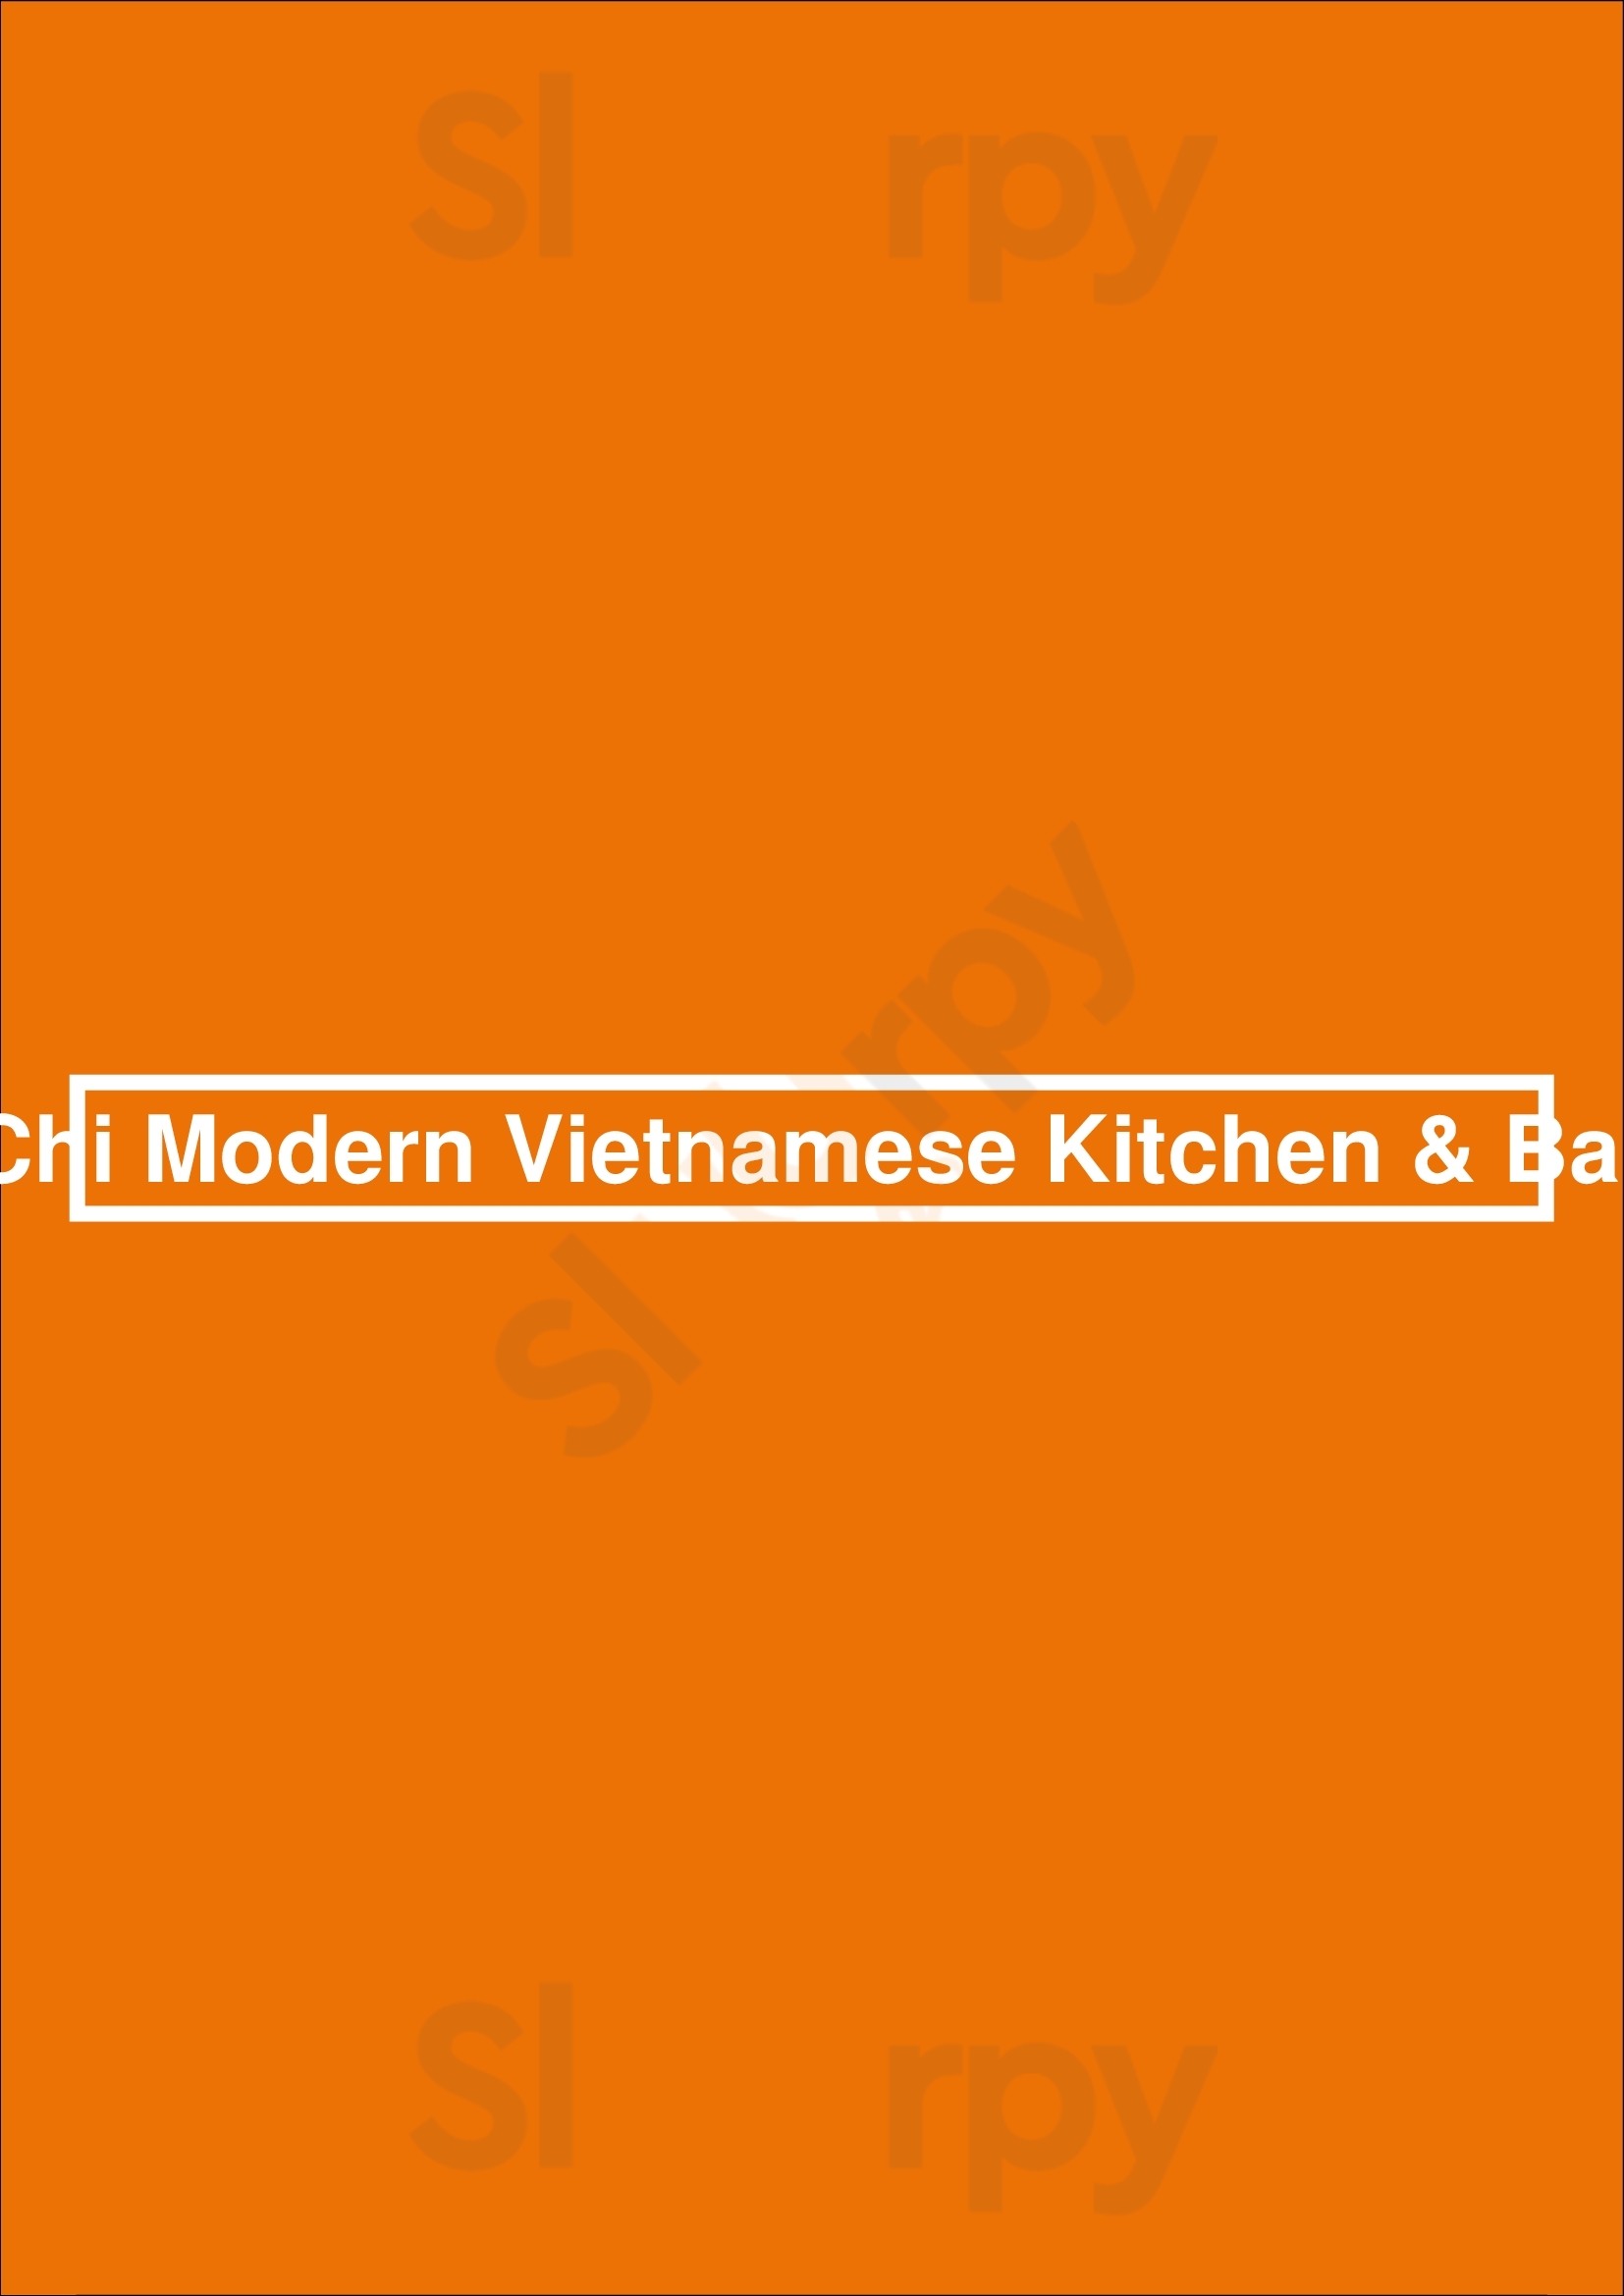 Chi Modern Vietnamese Kitchen & Bar Vancouver Menu - 1